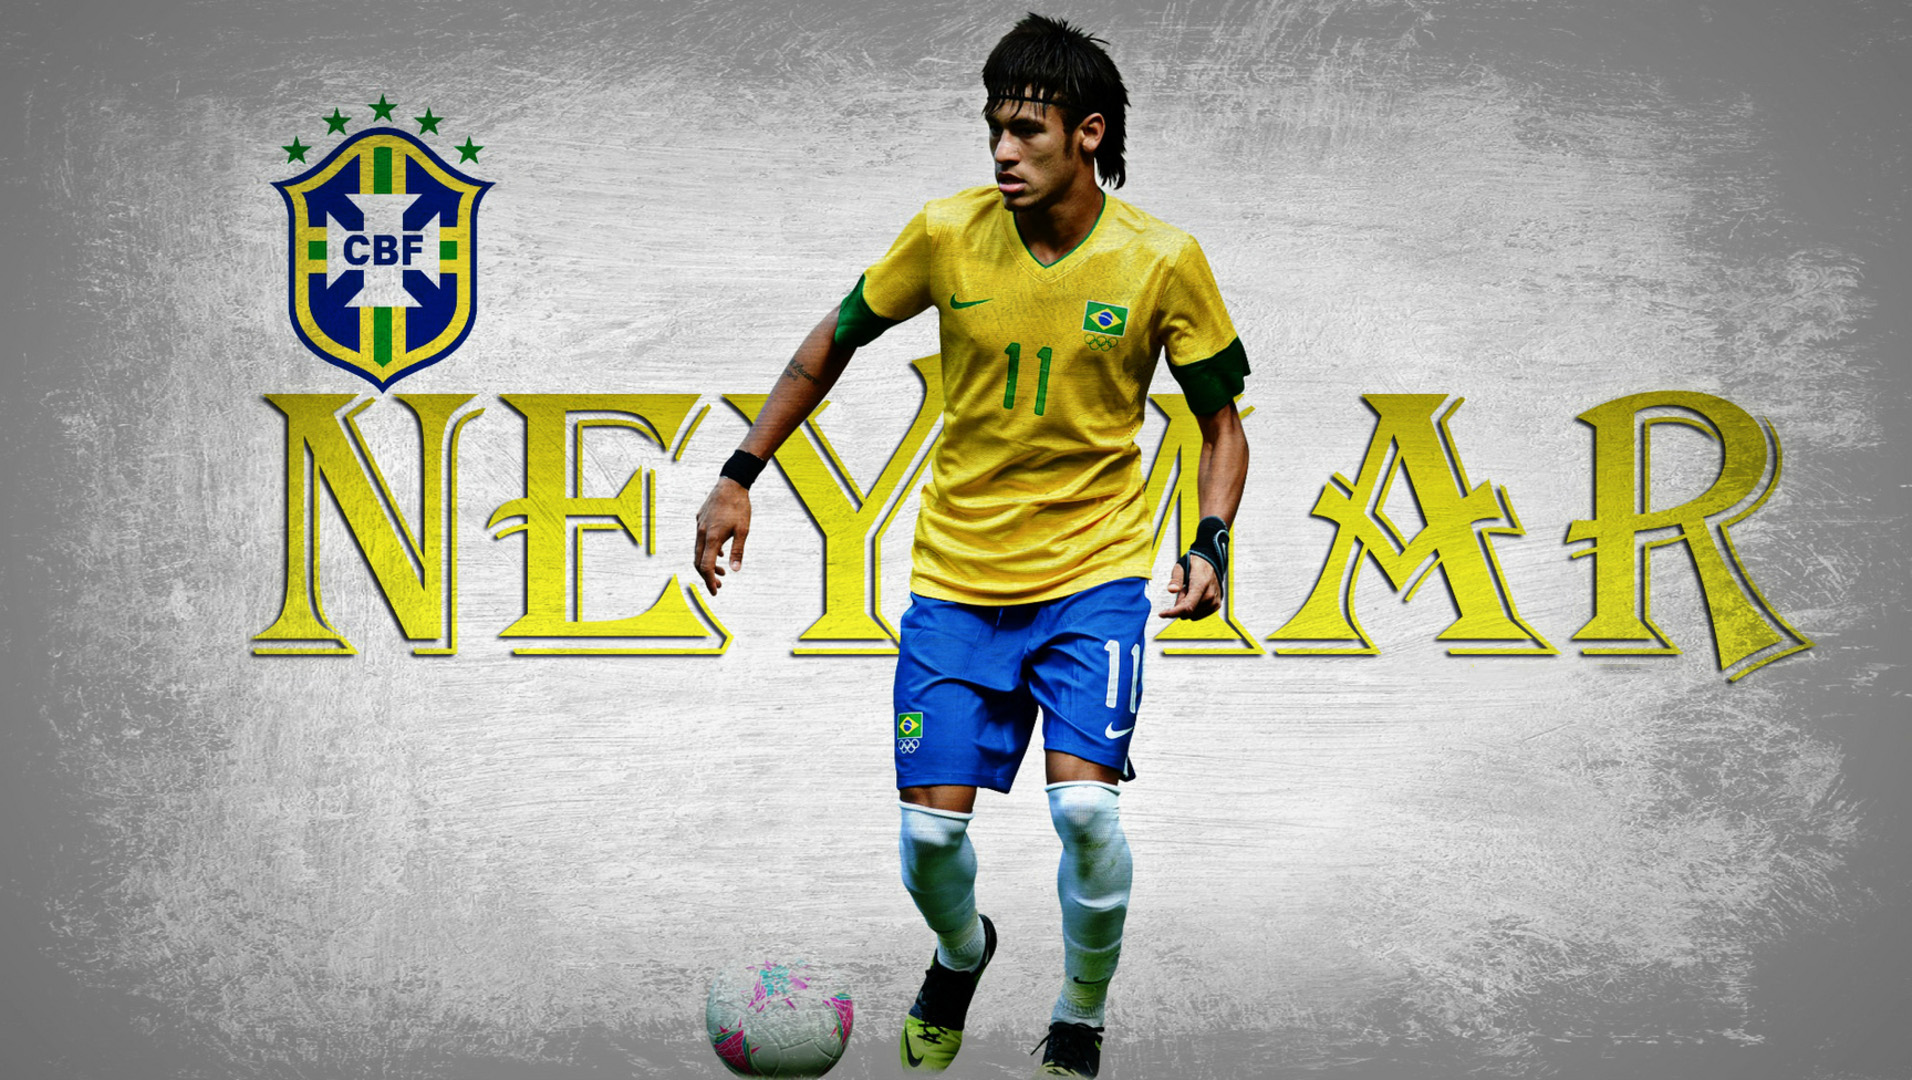 Neymar Wallpaper In HD Barcelona And Brazil Sport Image